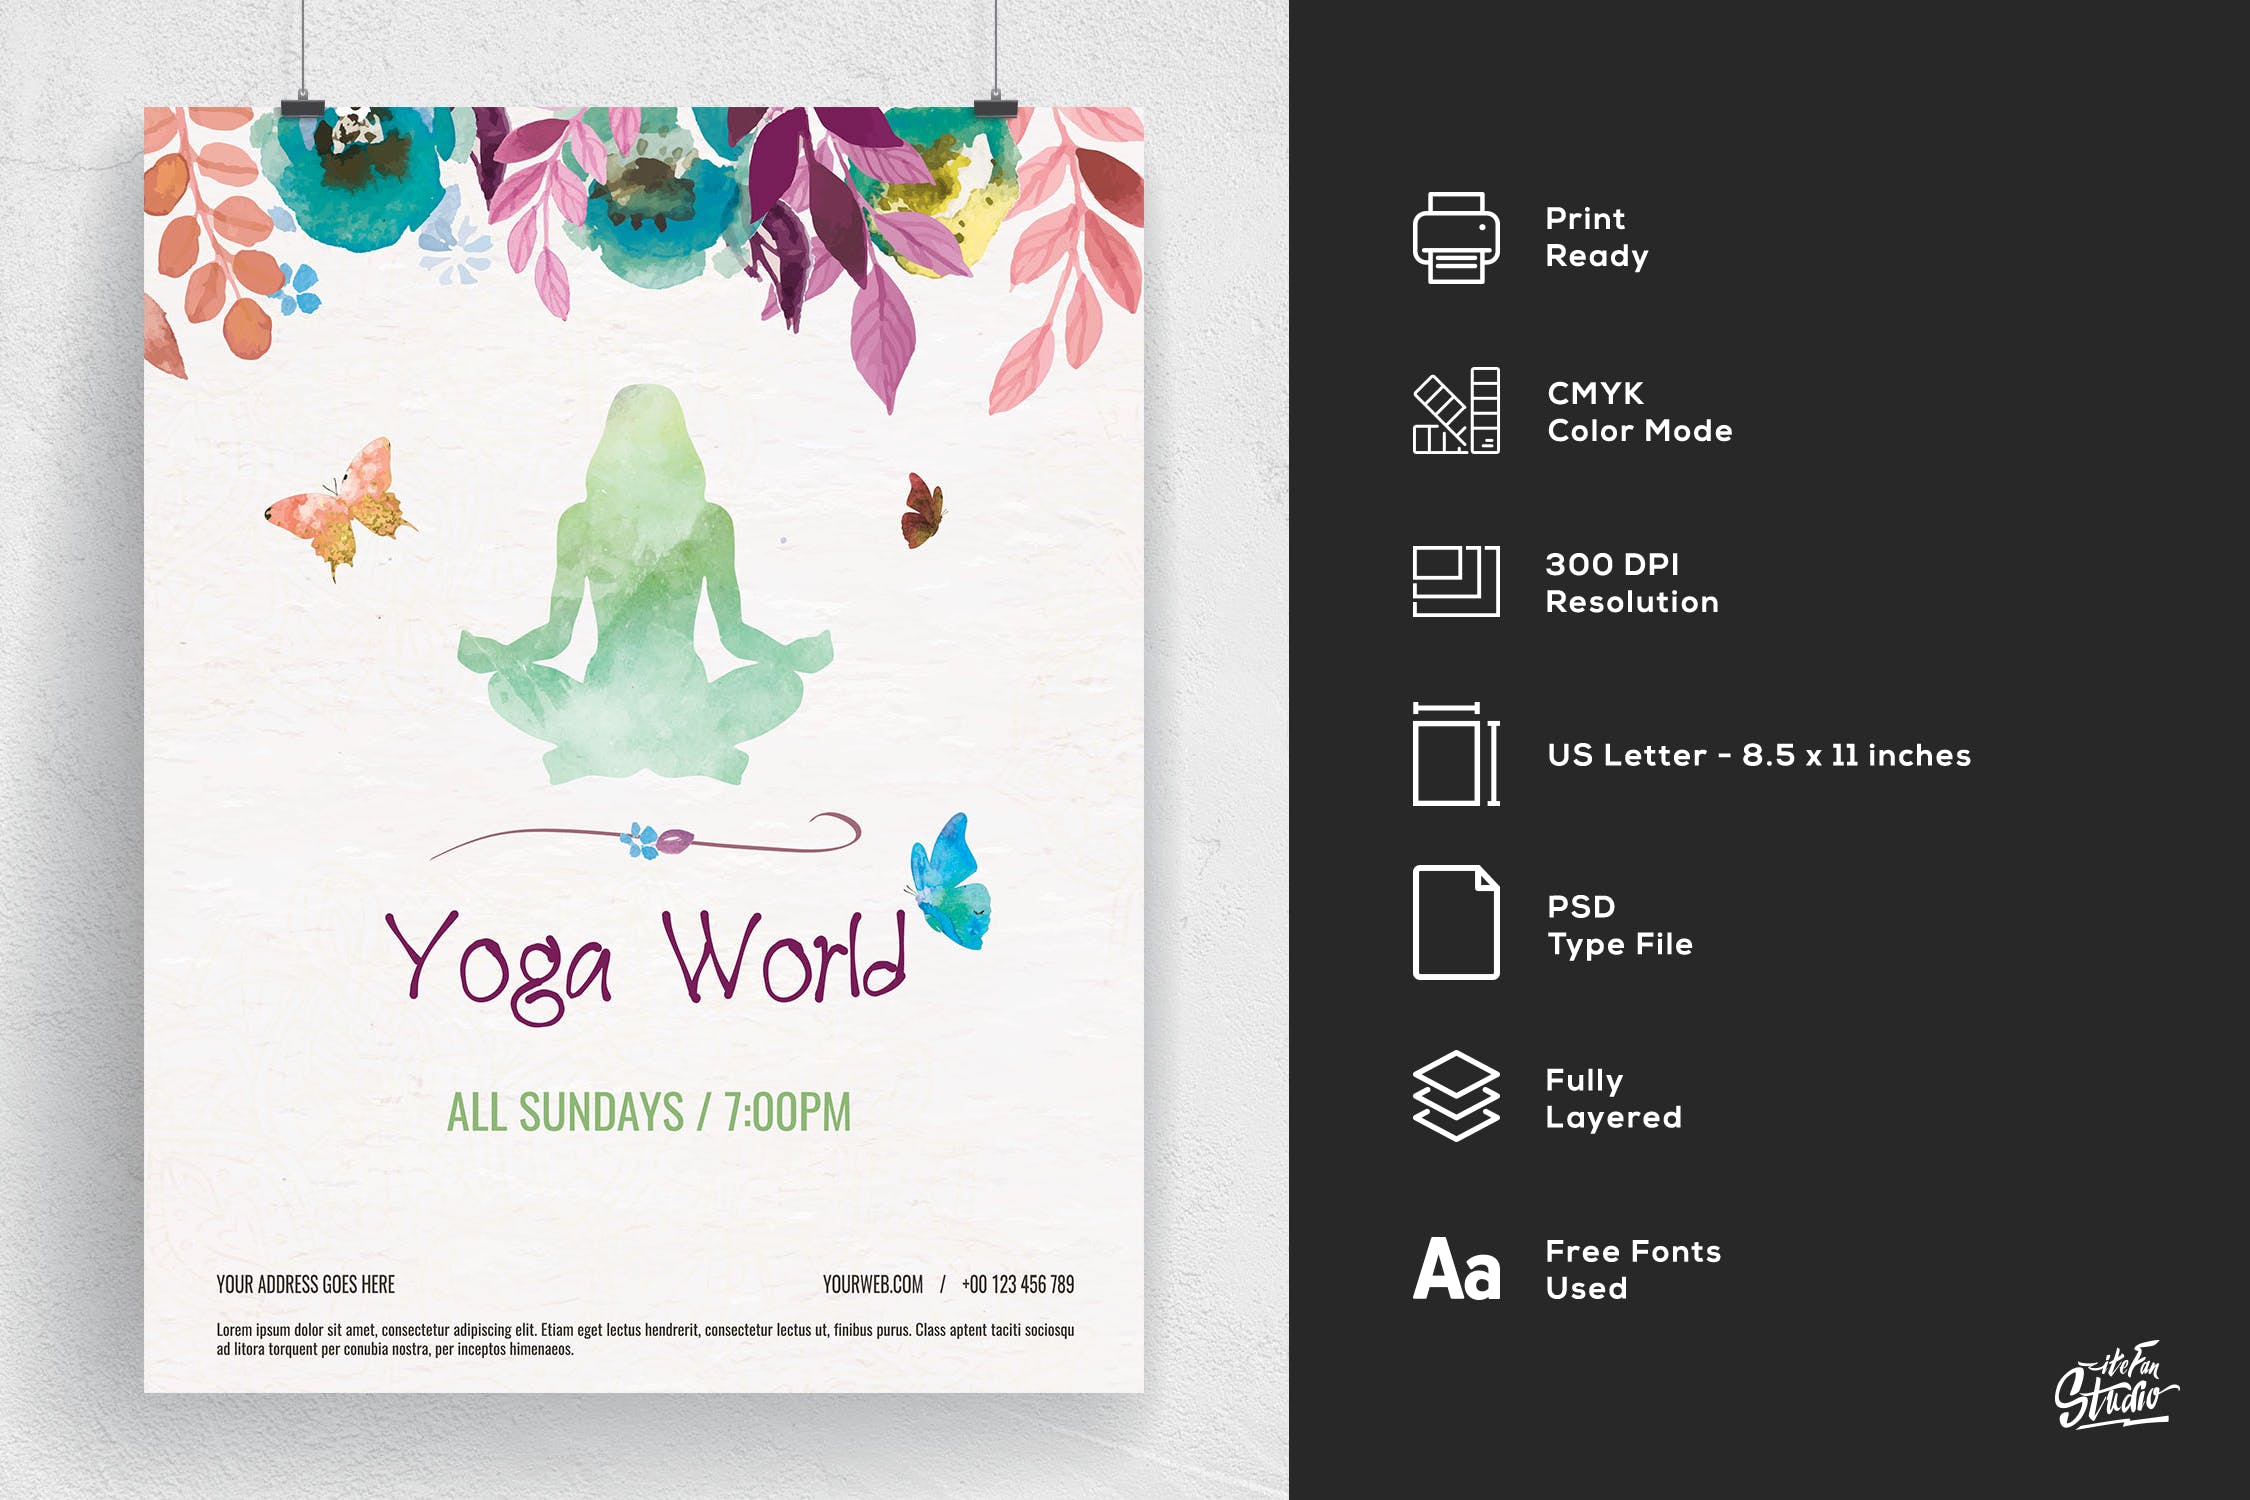 多彩水彩手绘设计风格瑜伽主题活动海报传单模板 Colorful Hand Painted Yoga World Flyer插图(1)